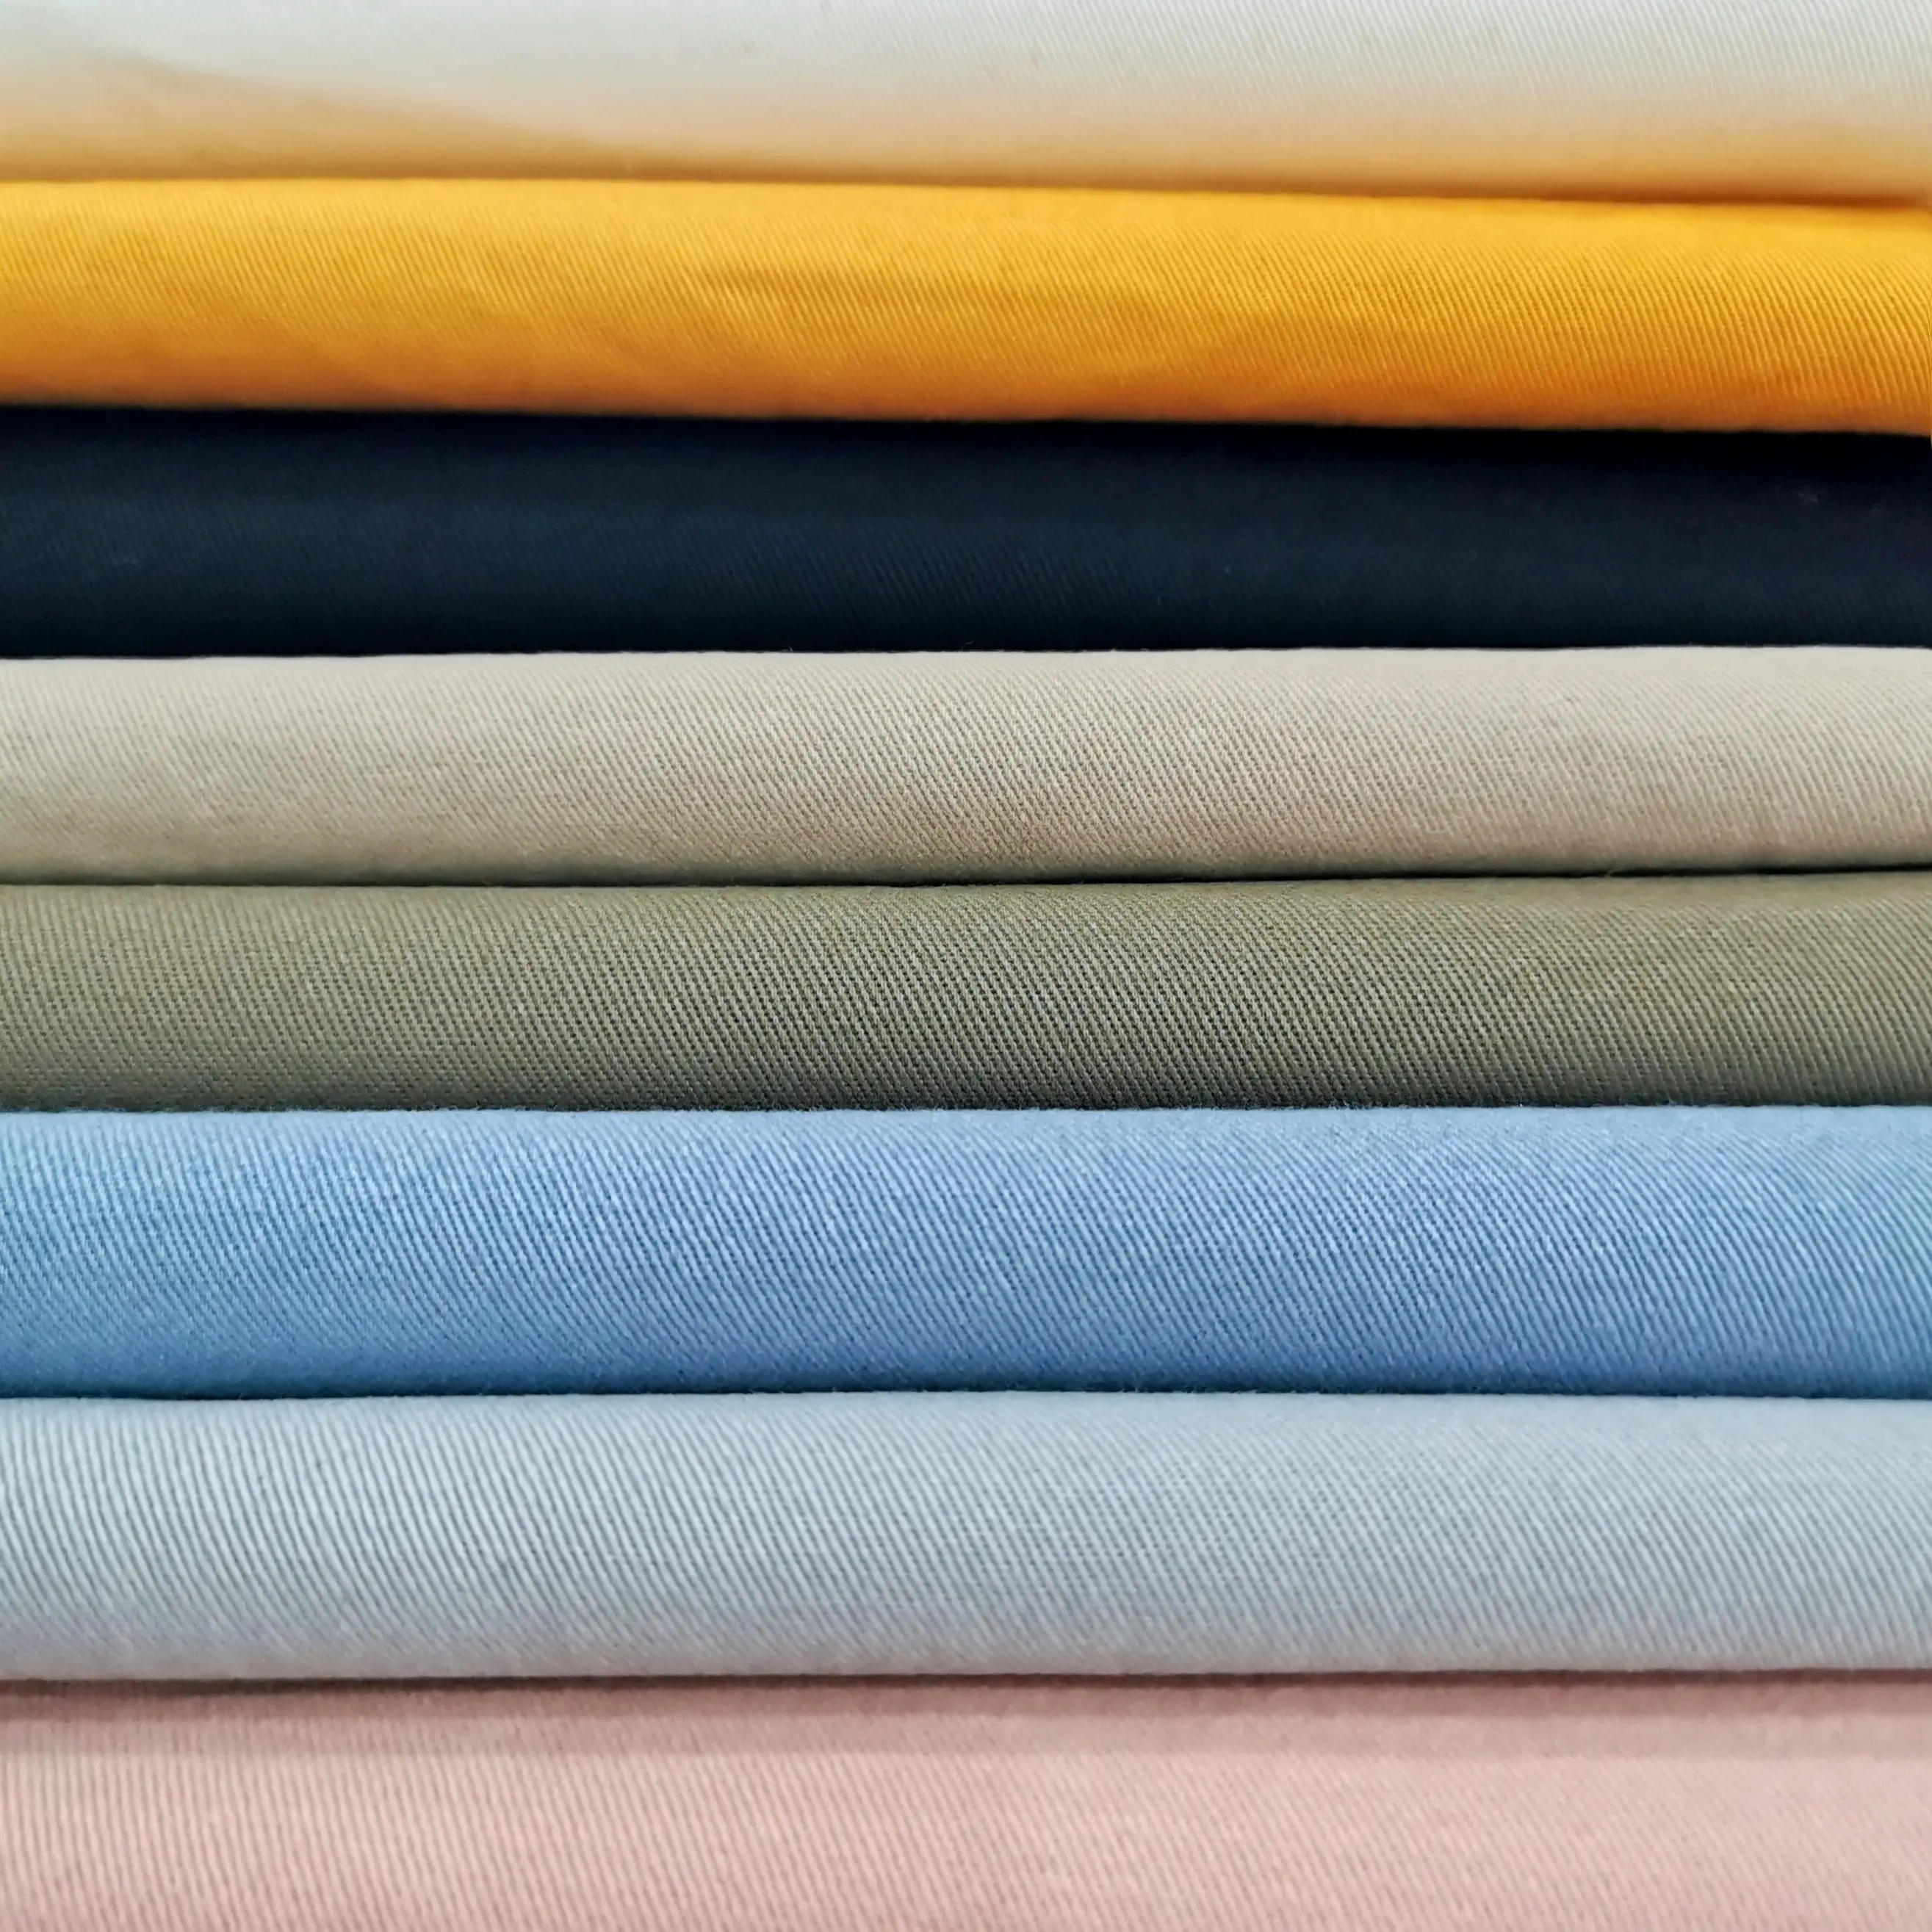 Tessuto di tela tinto solido della saia del cotone di colore puro organico all'ingrosso 100% per il tessuto dell'abbigliamento